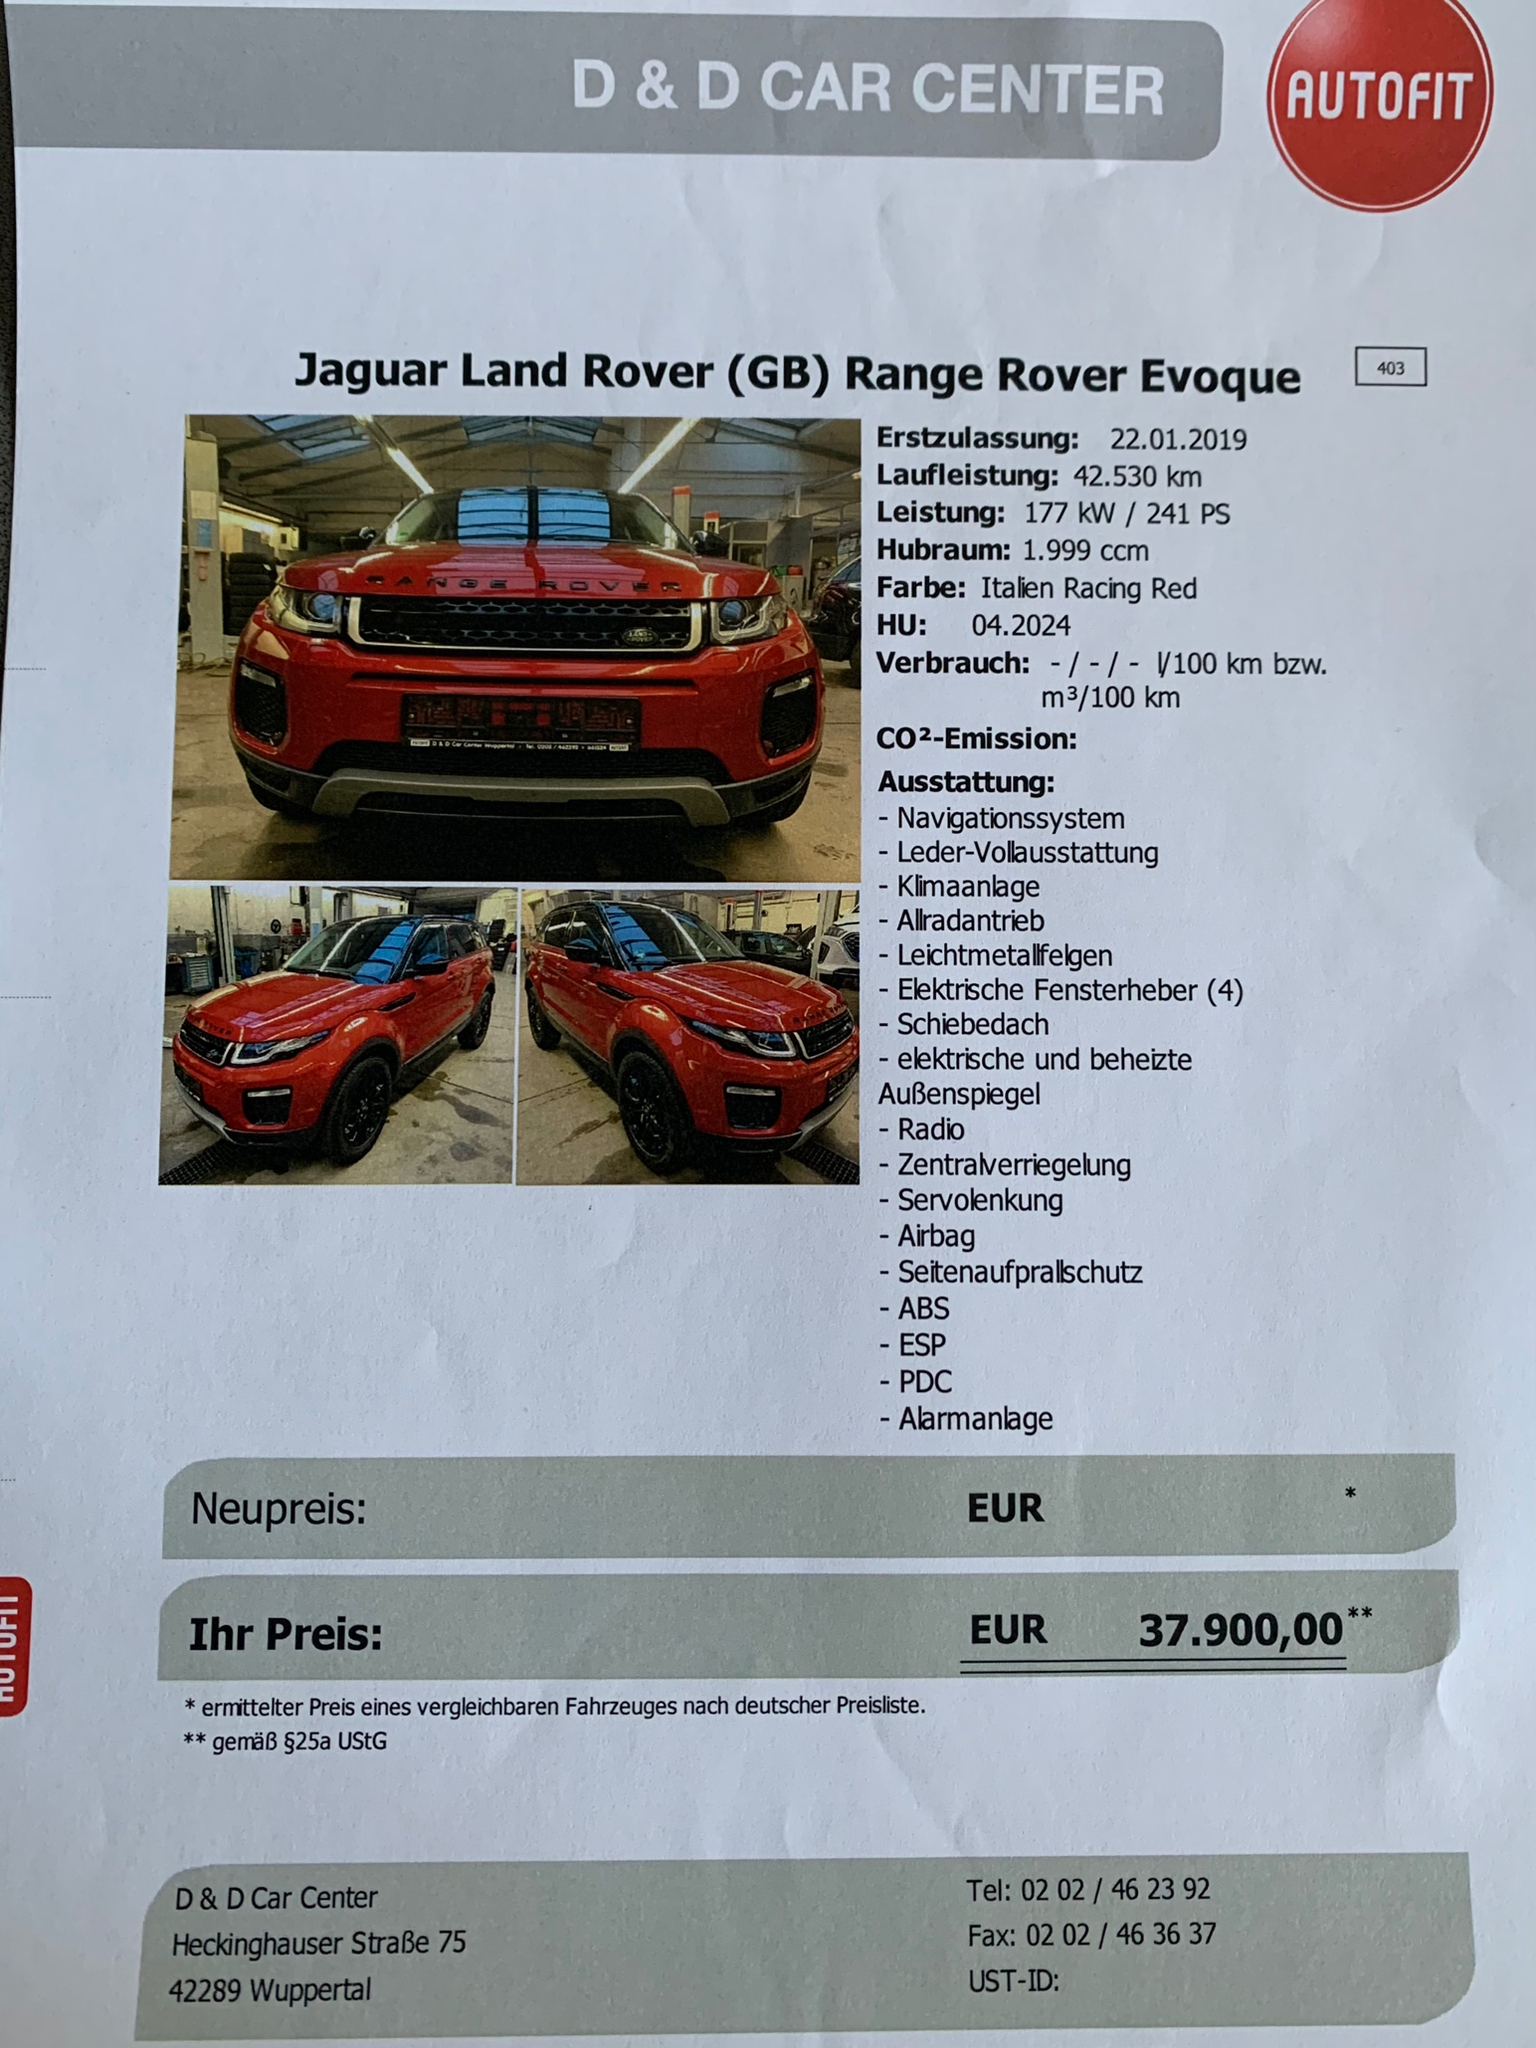 Jaguar Land Rover (GG) Range Rover Evoque